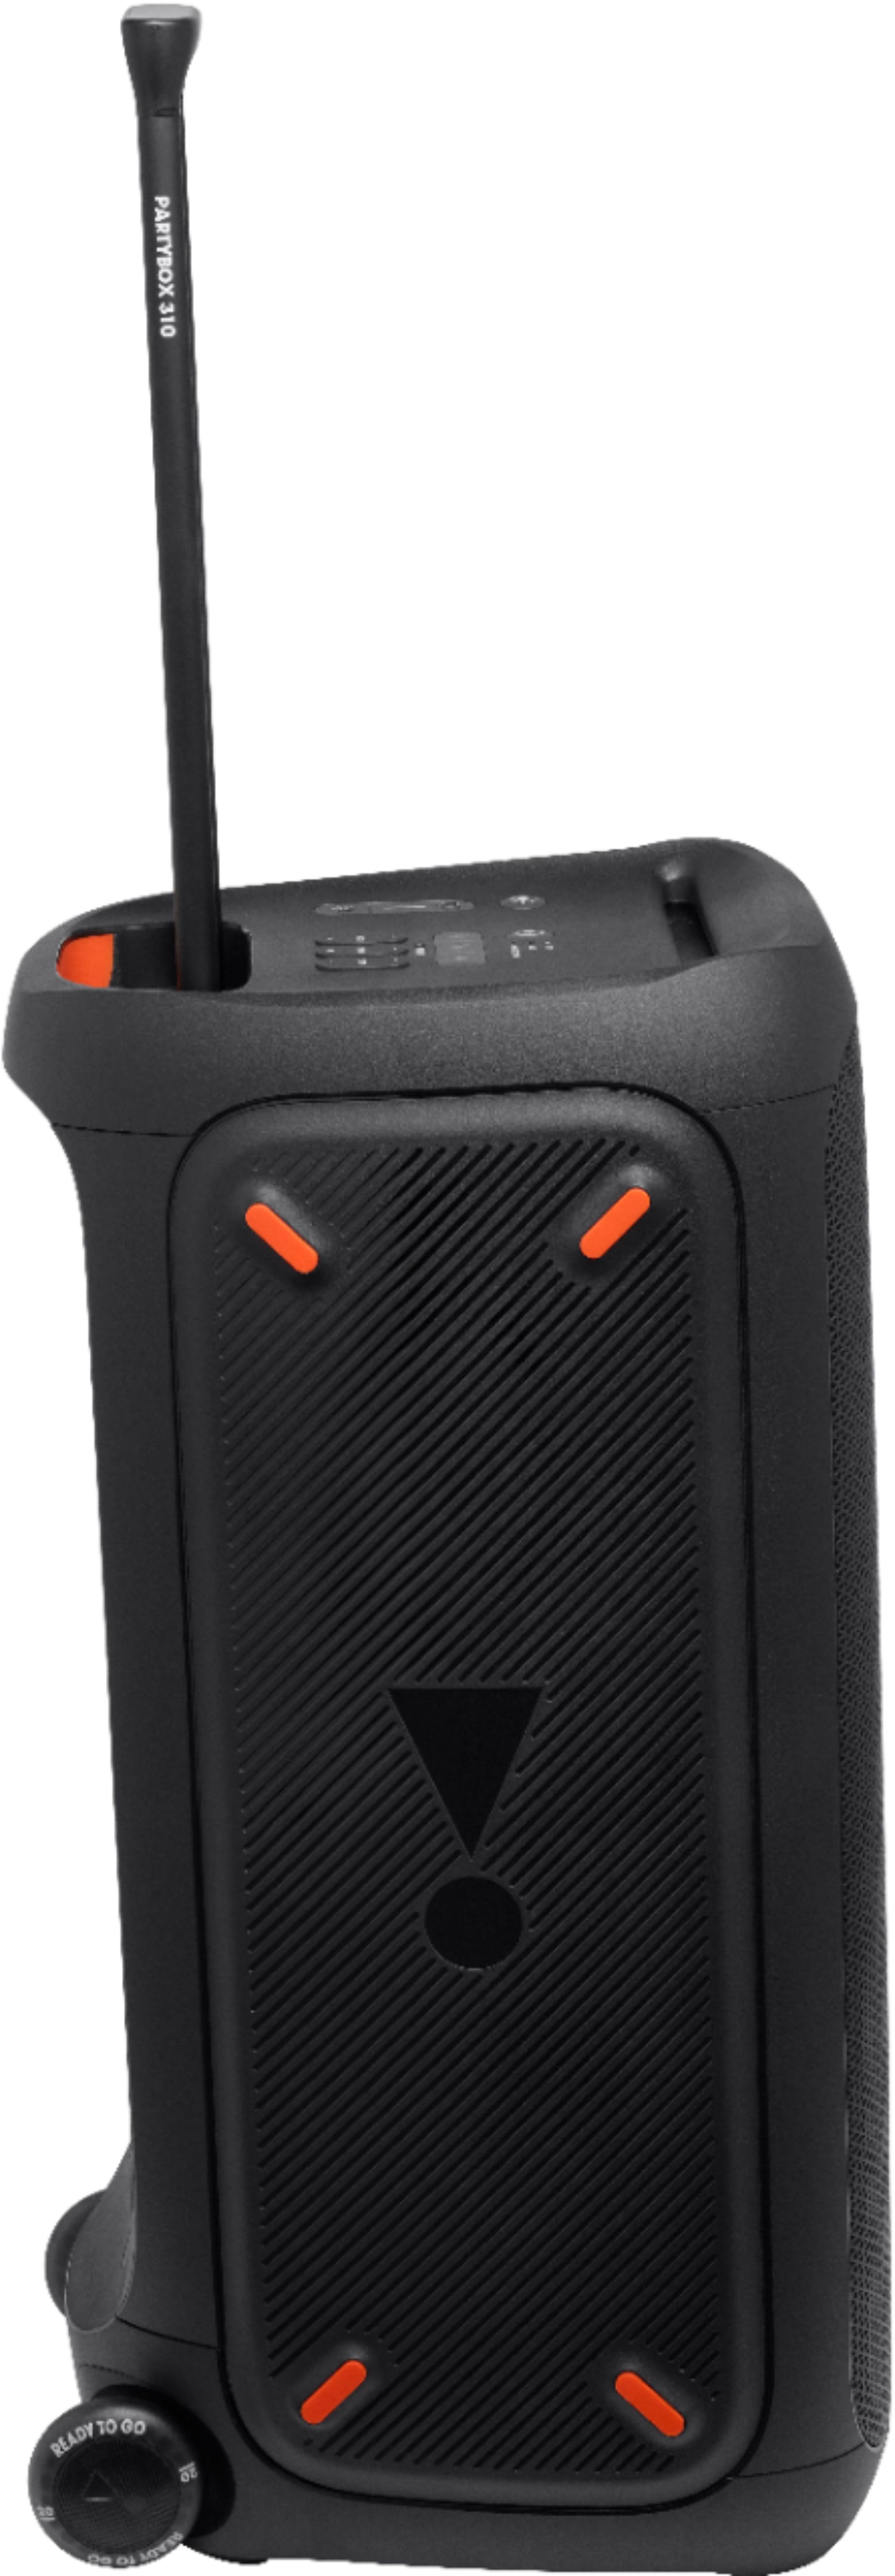 filosoof in plaats daarvan ambitie JBL PartyBox 310 Portable Party Speaker Black JBLPARTYBOX310AM - Best Buy